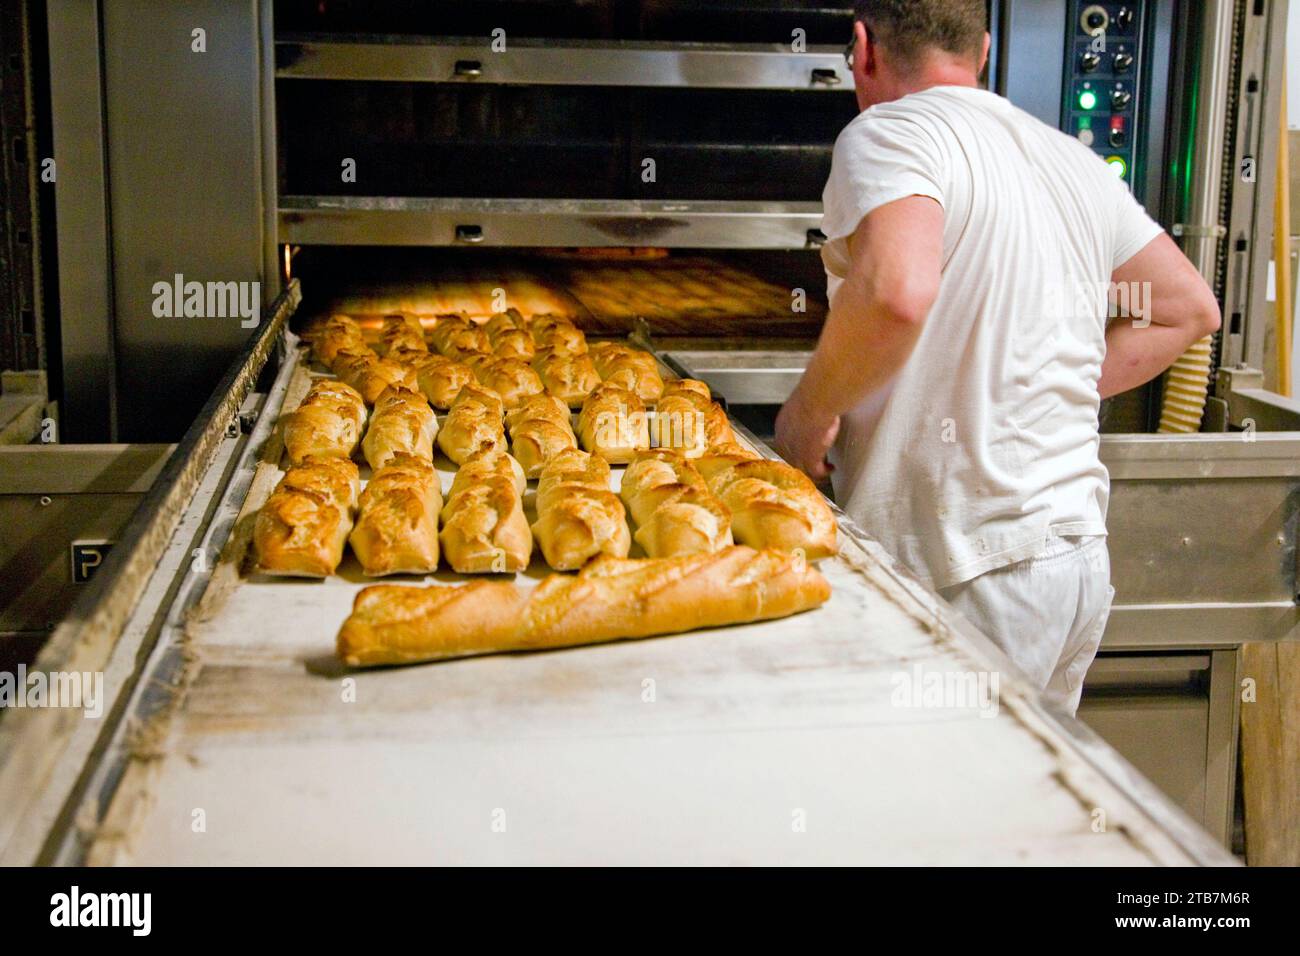 Boulangerie : fabrication du pain dans un four à pâtisserie. Illustration d'une boulangerie fonctionnant avec un four à pain à granulés impact de la hausse des prix de l'électricité. Frais Banque D'Images